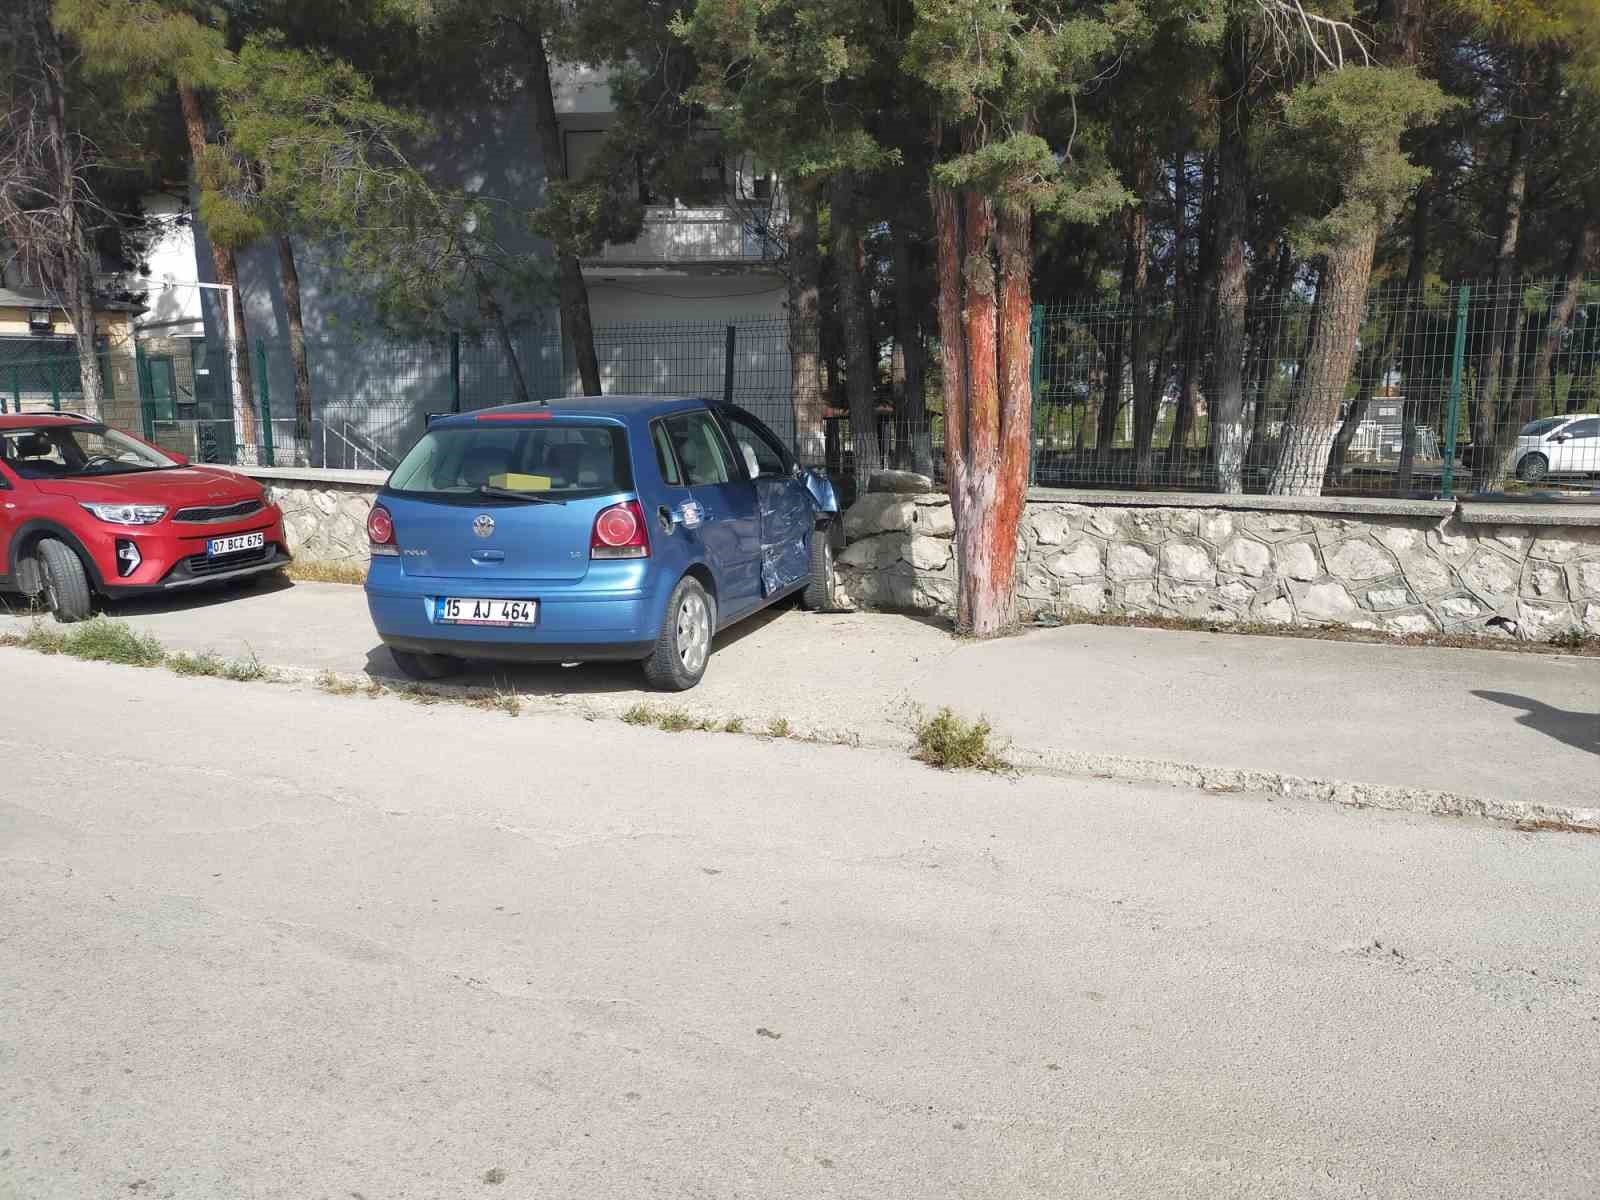 Burdur’da kavşağa kontrolsüz giren 2 otomobil çarpıştı: 1 yaralı
